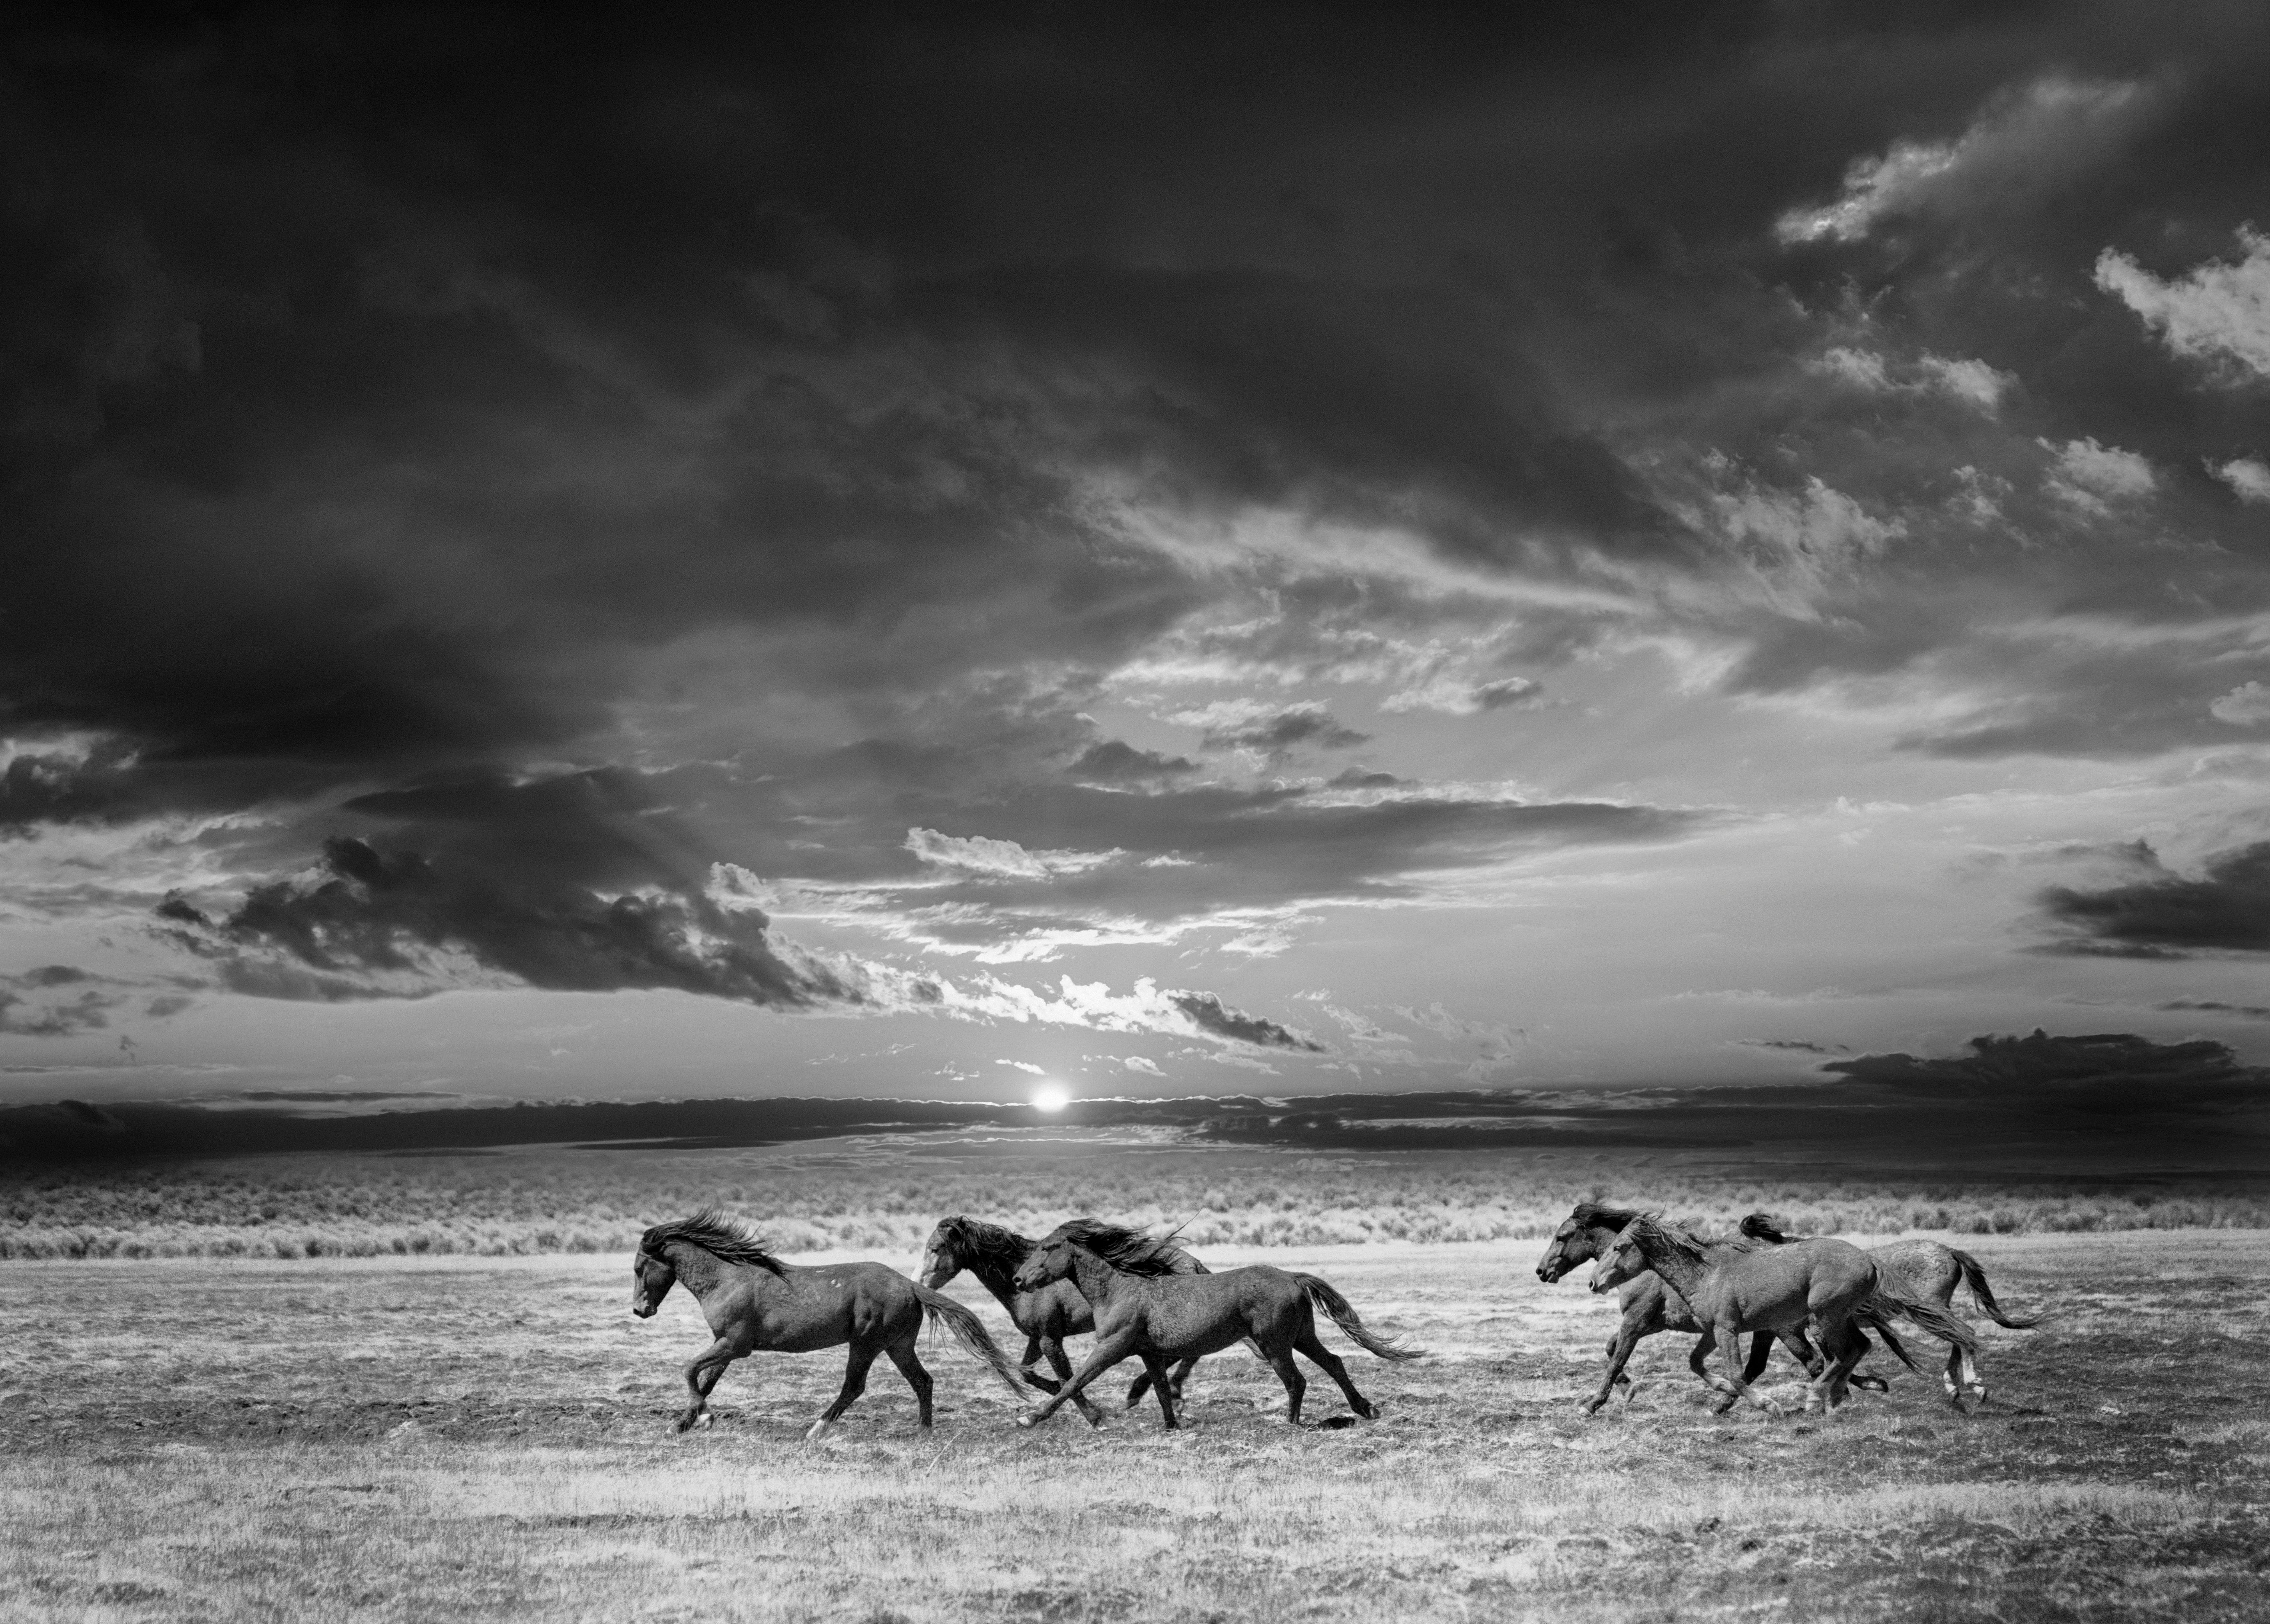 Black and White Photograph Shane Russeck - "Chasing the Light" 60x40 Photographie en noir et blanc de chevaux sauvages Photographie